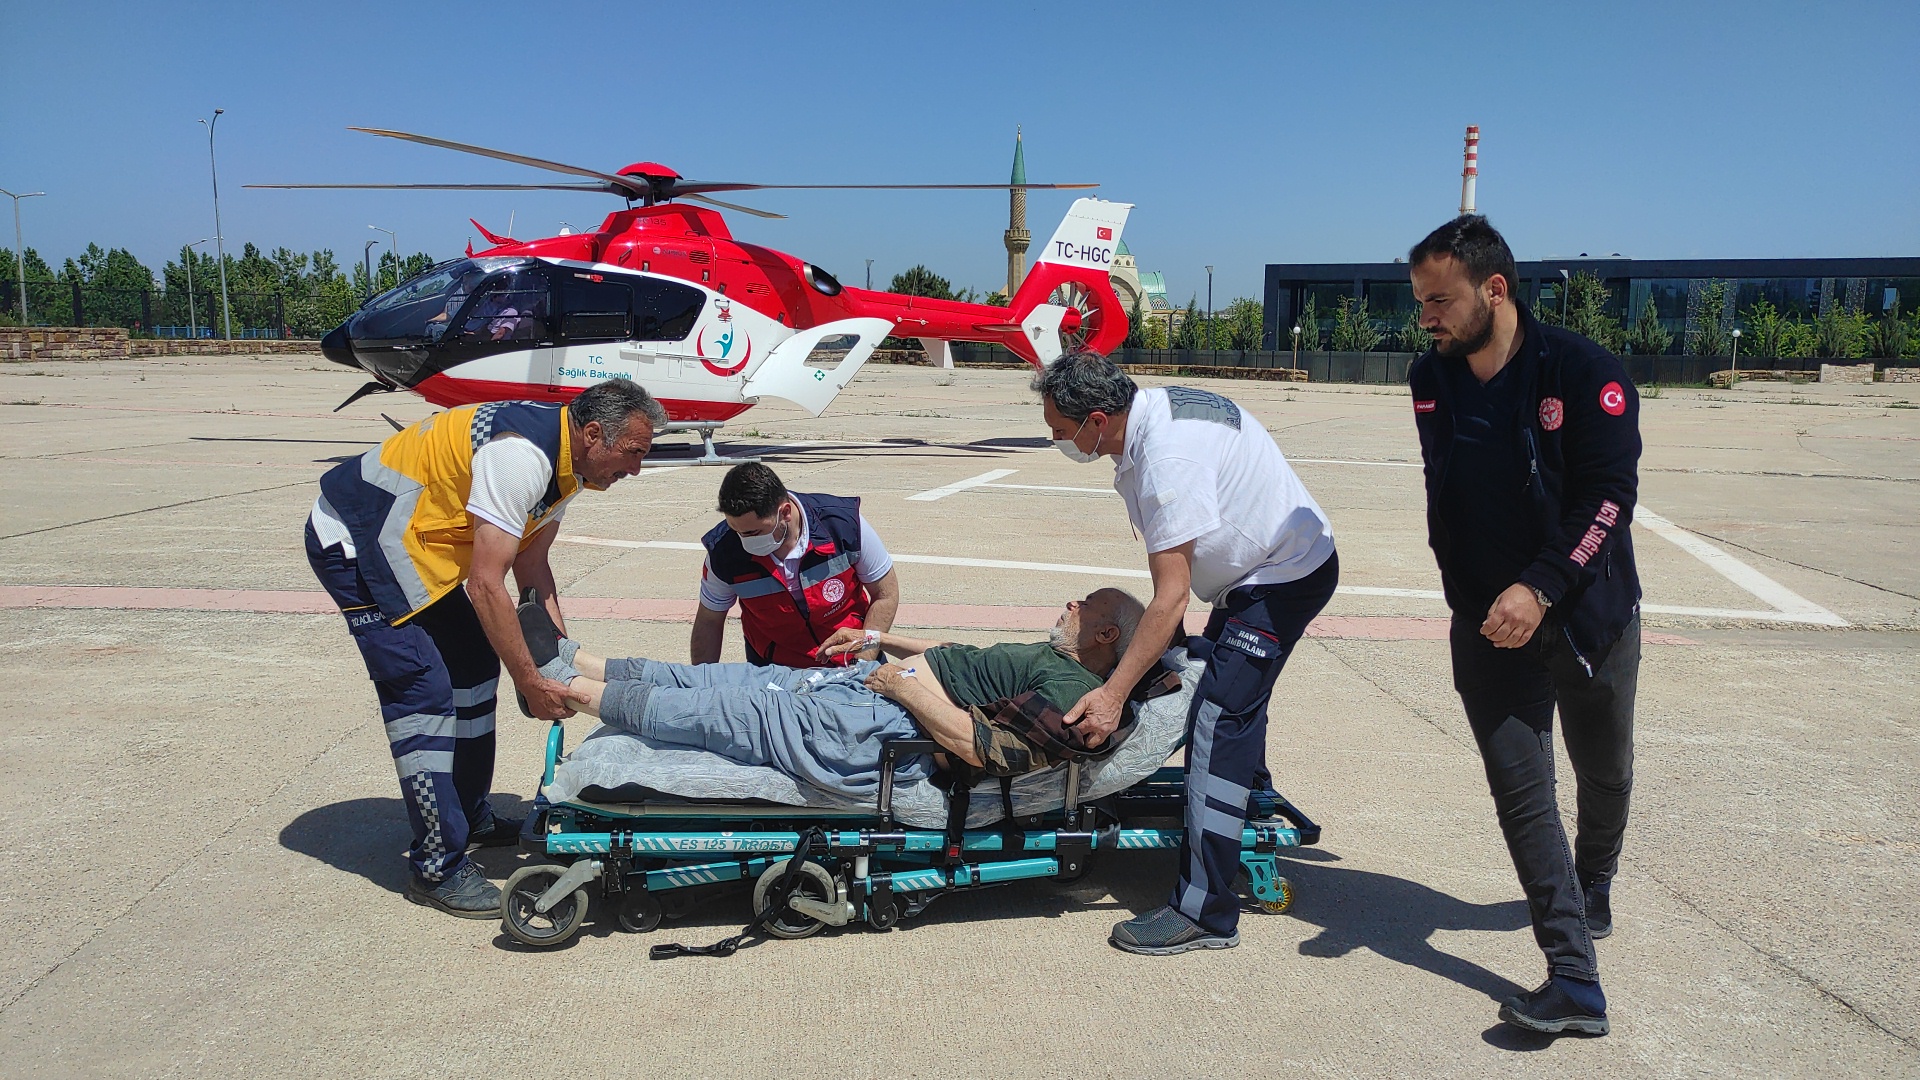 Ambulans helikopter kalp krizi geçiren hasta için havalandı